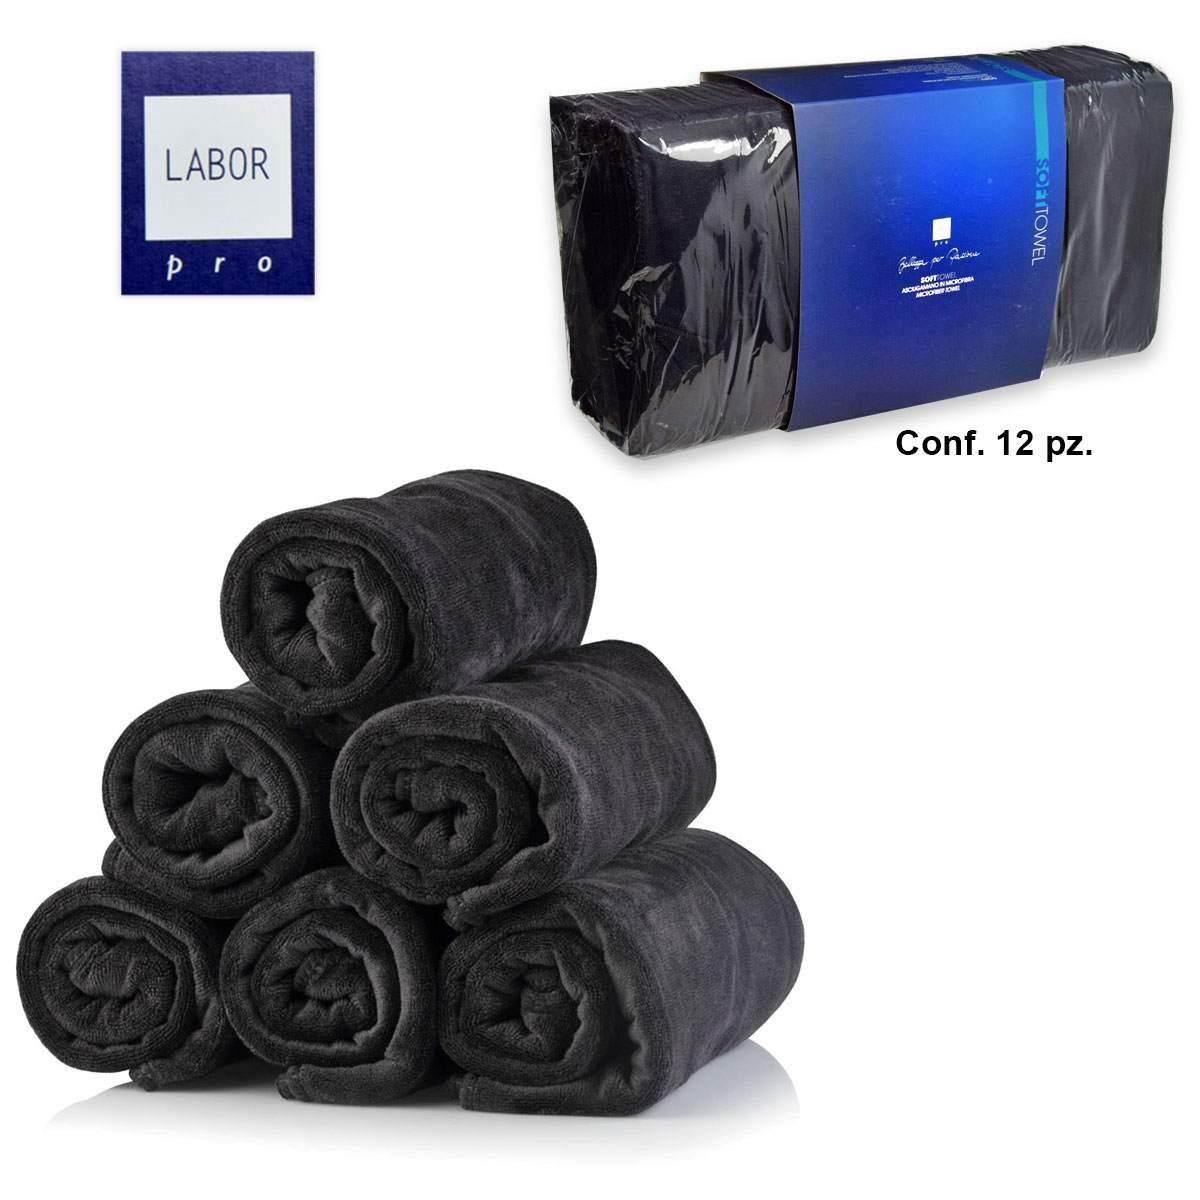 Asciugamano microfibra nero 45 x 85 cm confezione 12 pezzi E701N  8012345545018